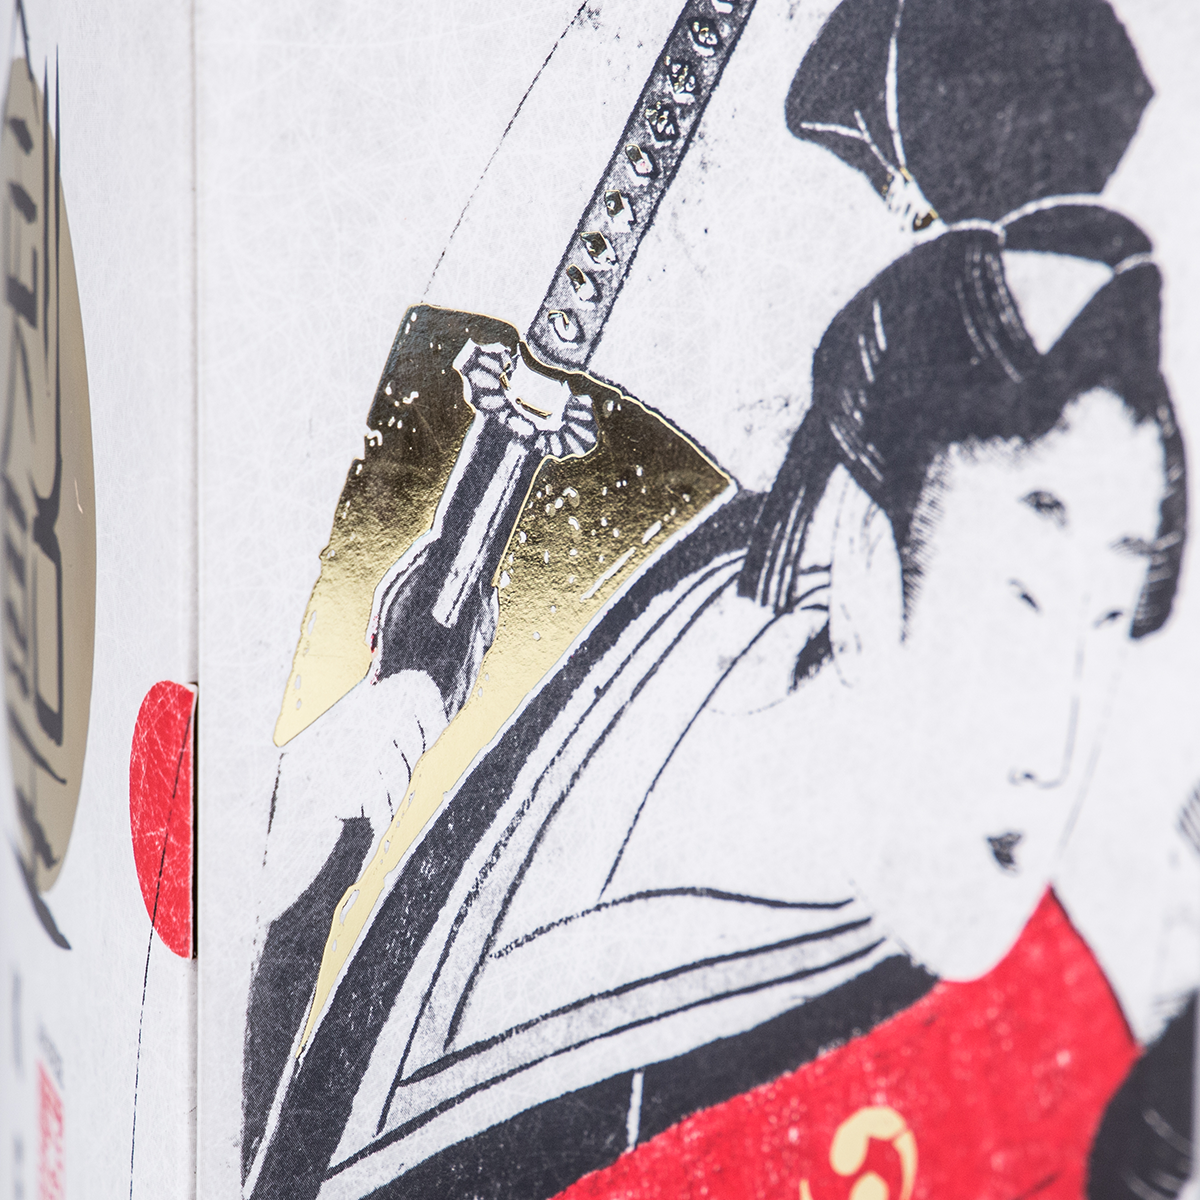 Картонная коробка под бутылку "Kensei", 160*215*160 мм